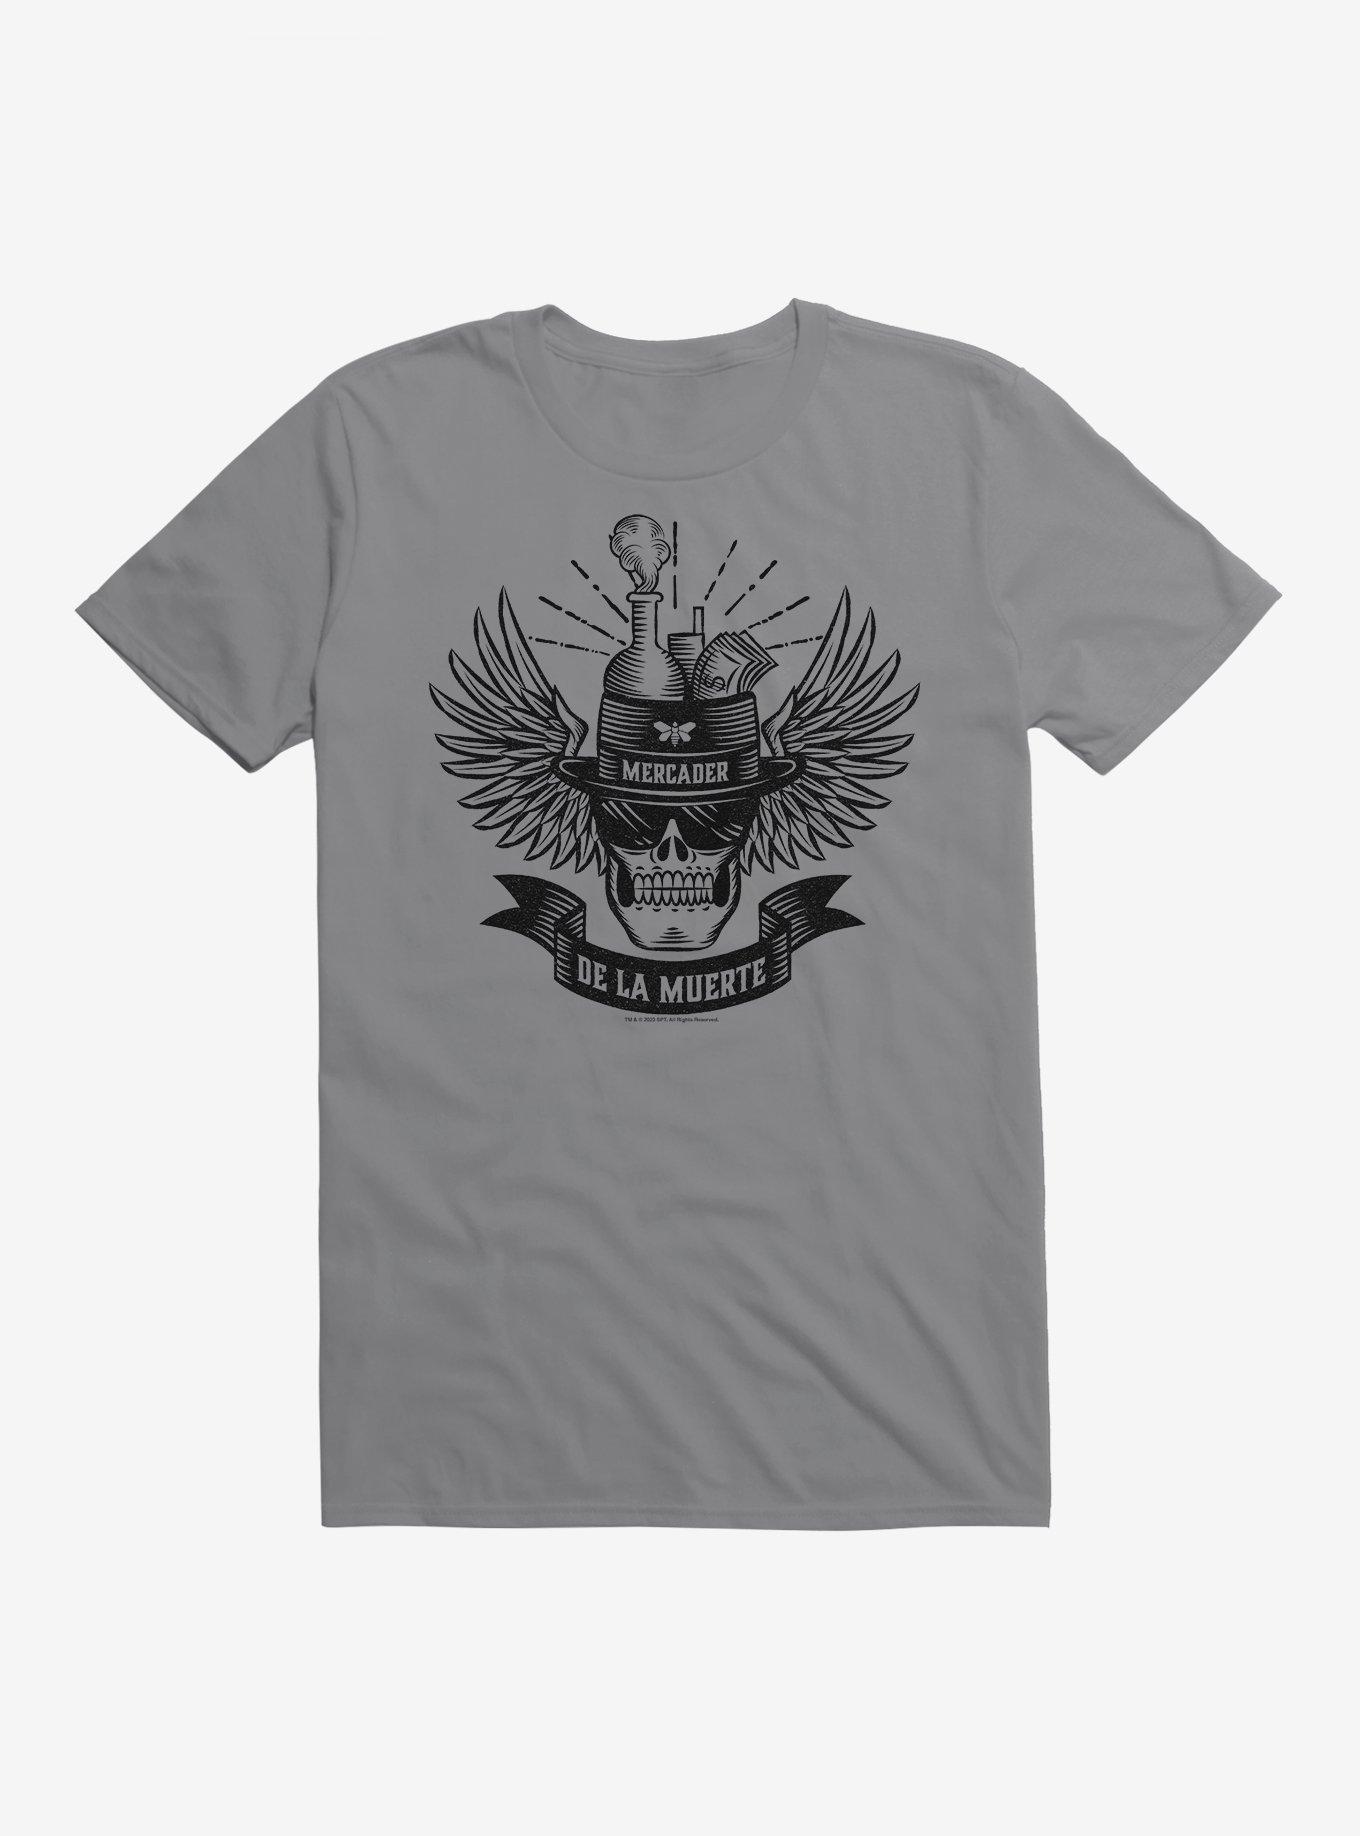 Breaking Bad Mercader De La Muerte T-Shirt